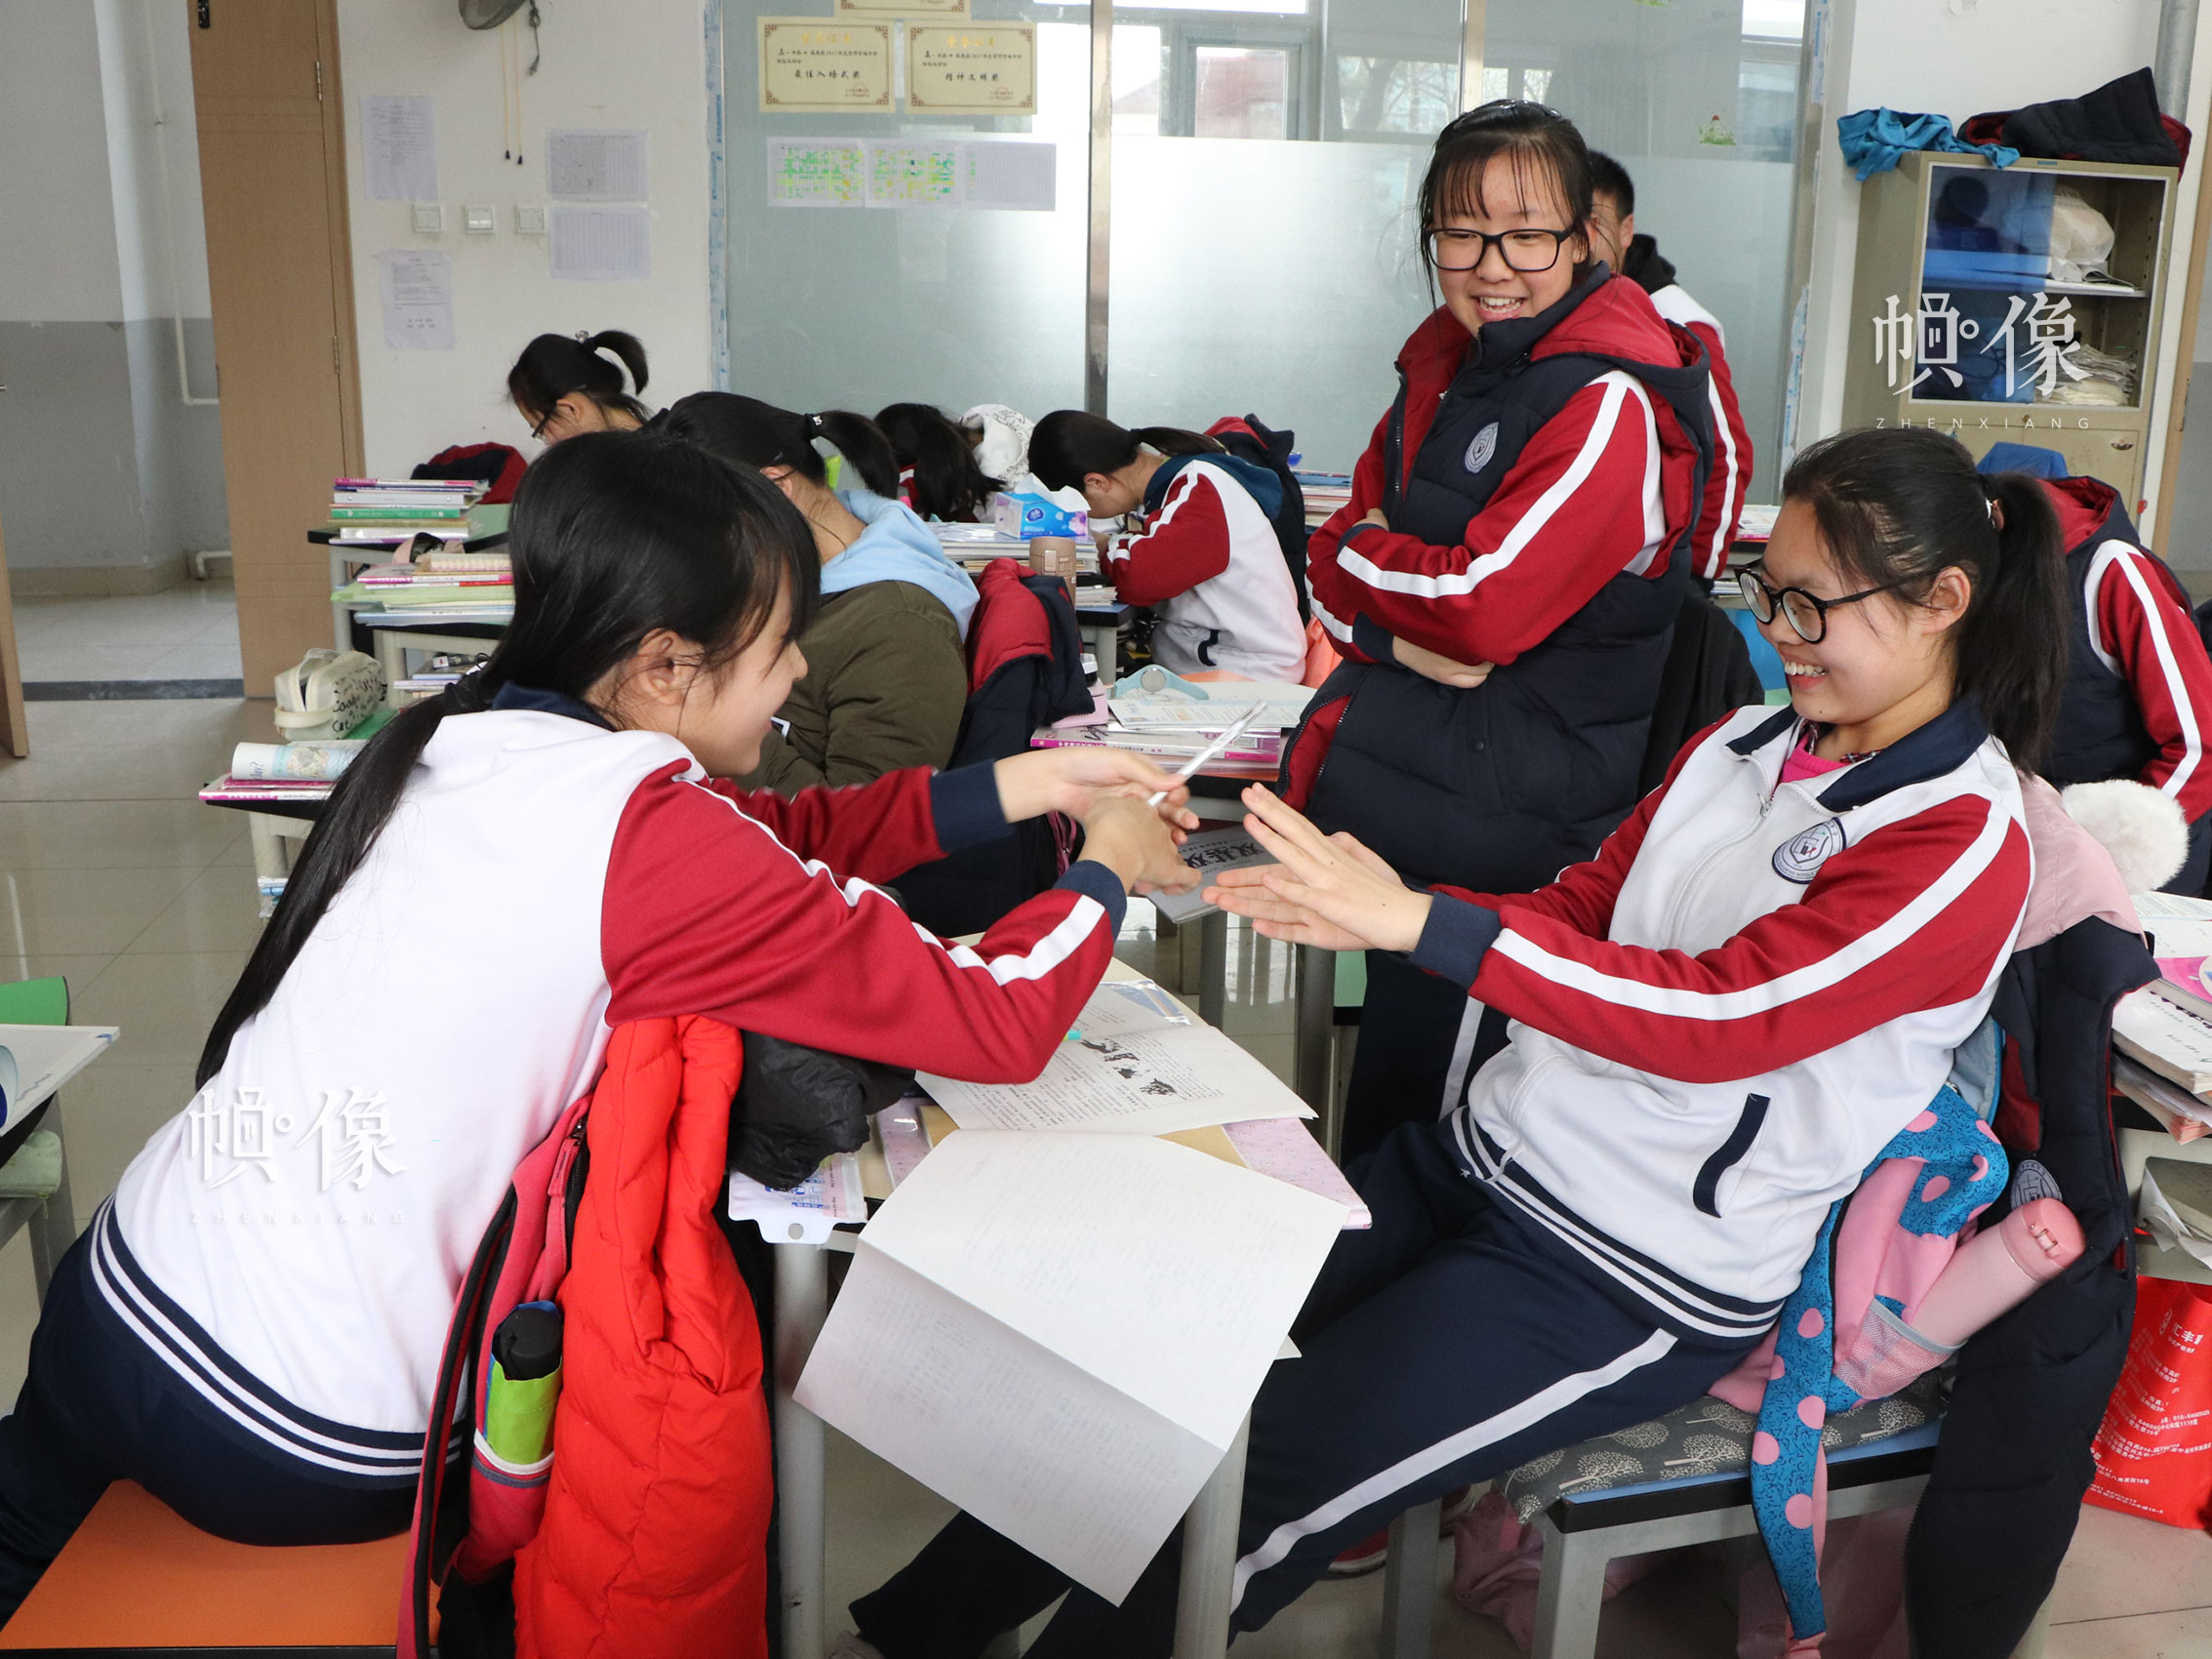 北京市石景山區某中學，課間嬉戲玩耍的學生們。中國網實習記者 韓依 攝